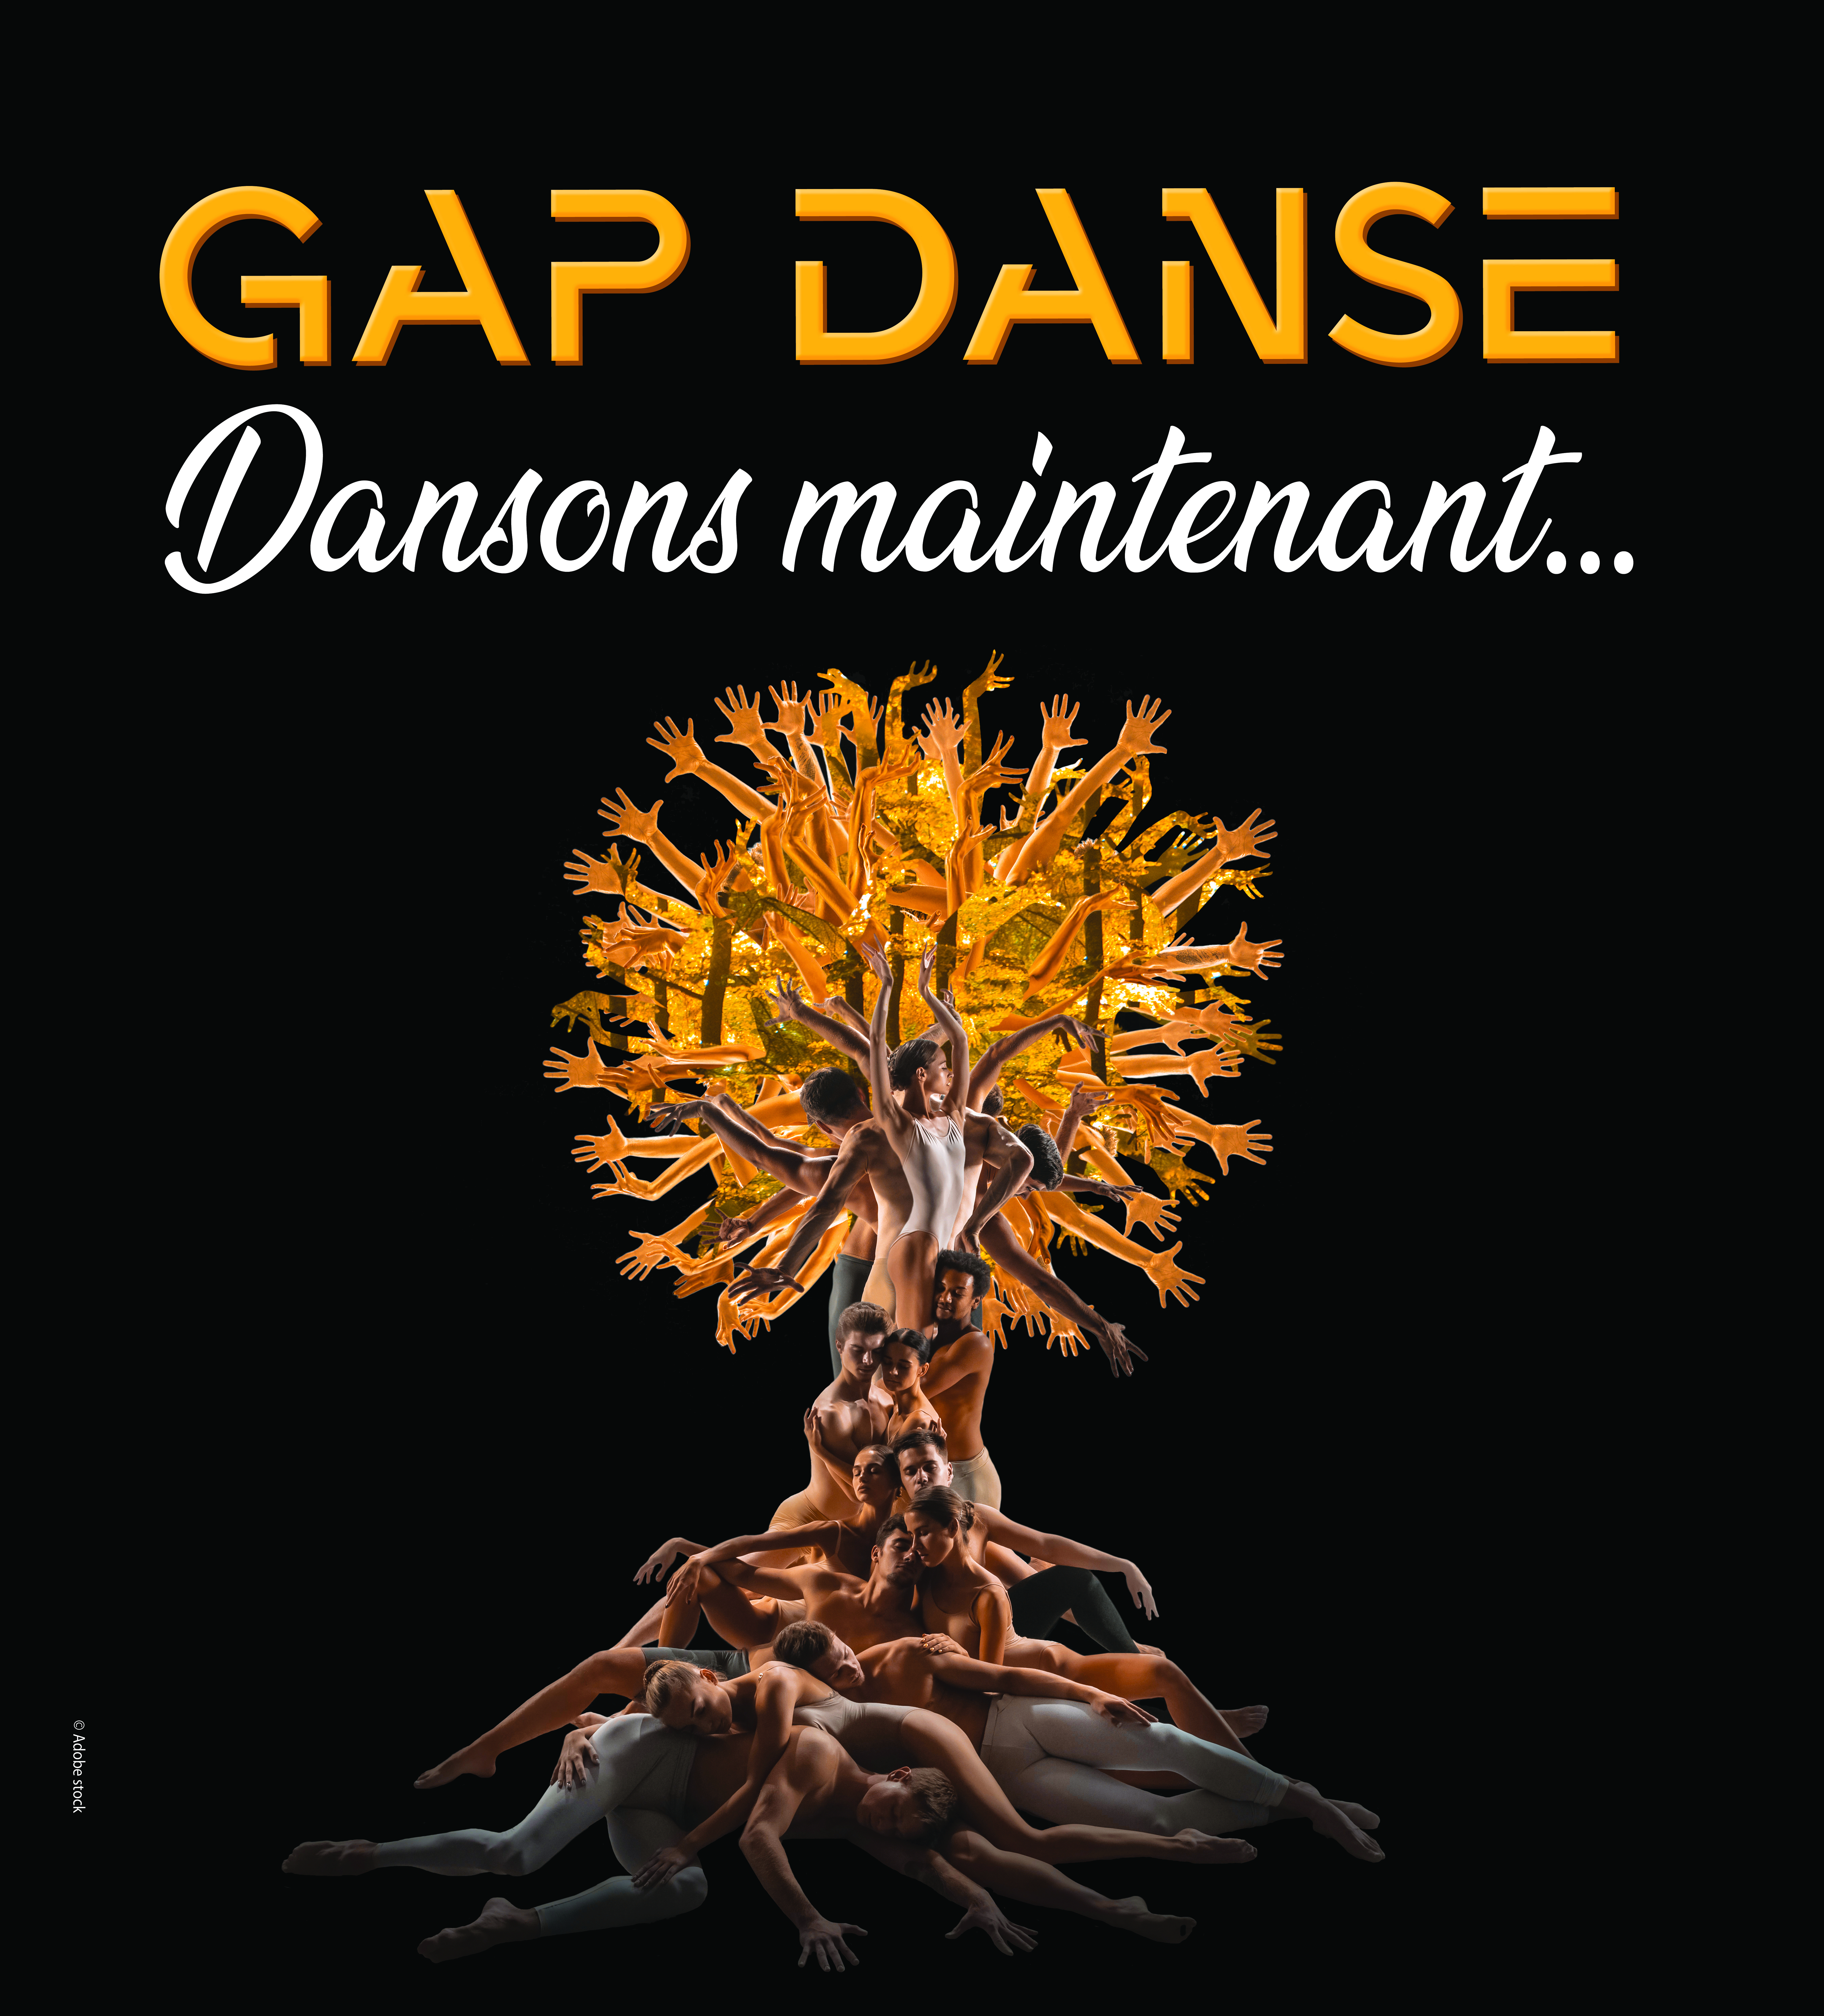 Gap Danse : démonstrations de danse, spectacle gratuit à Gap chaque année en début d'automne